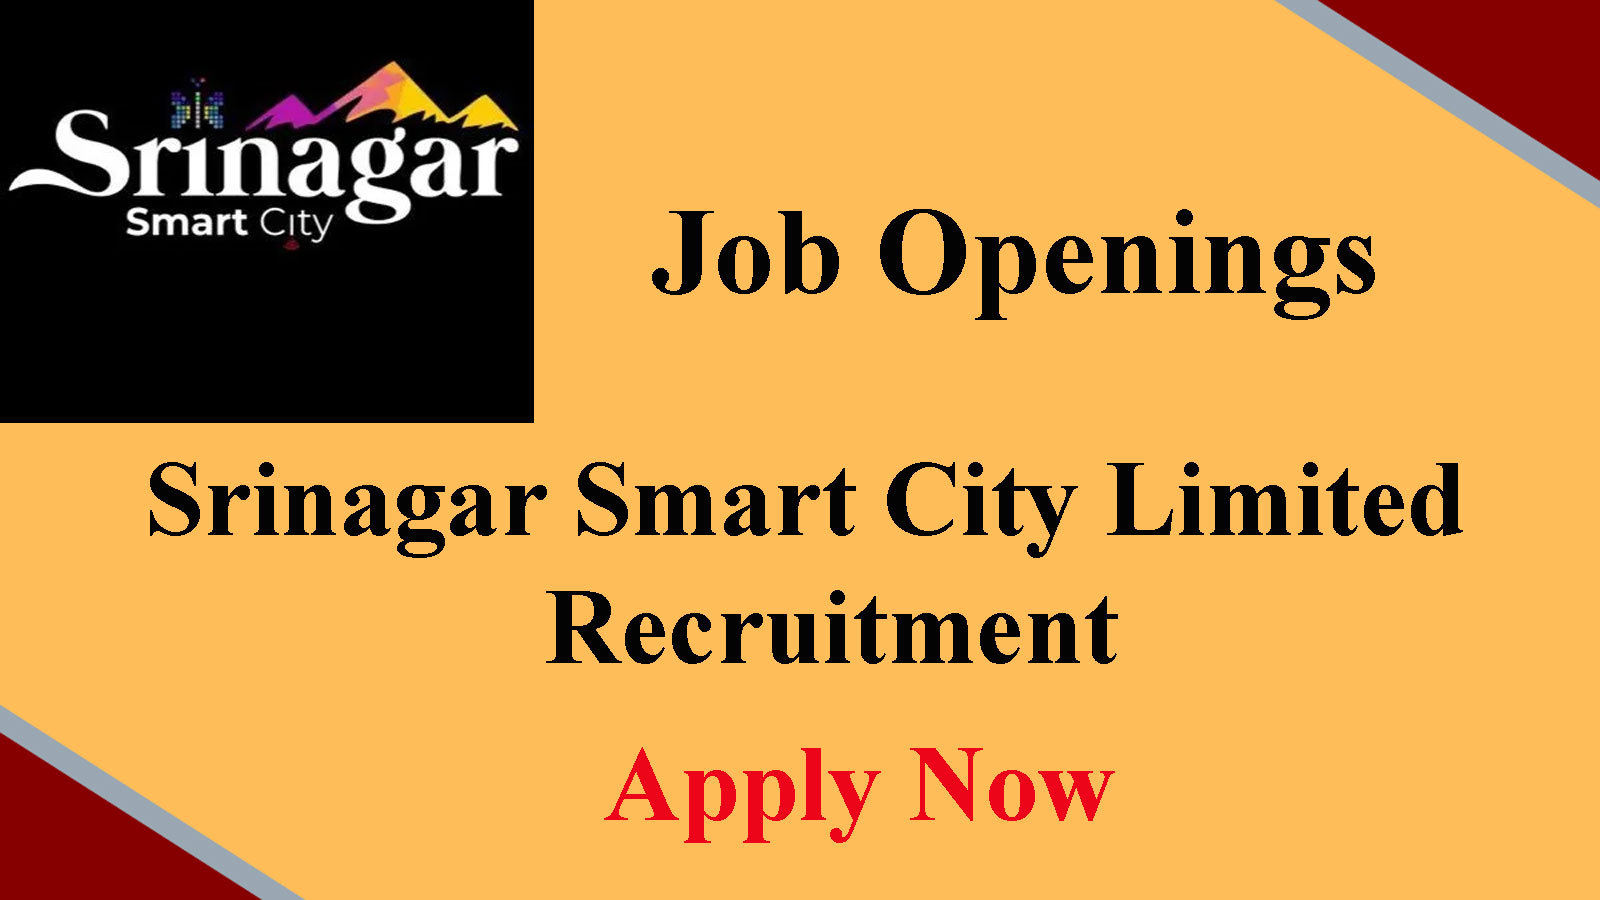 Srinagar Smart City Limited Recruitment 2022, Apply till Nov 30